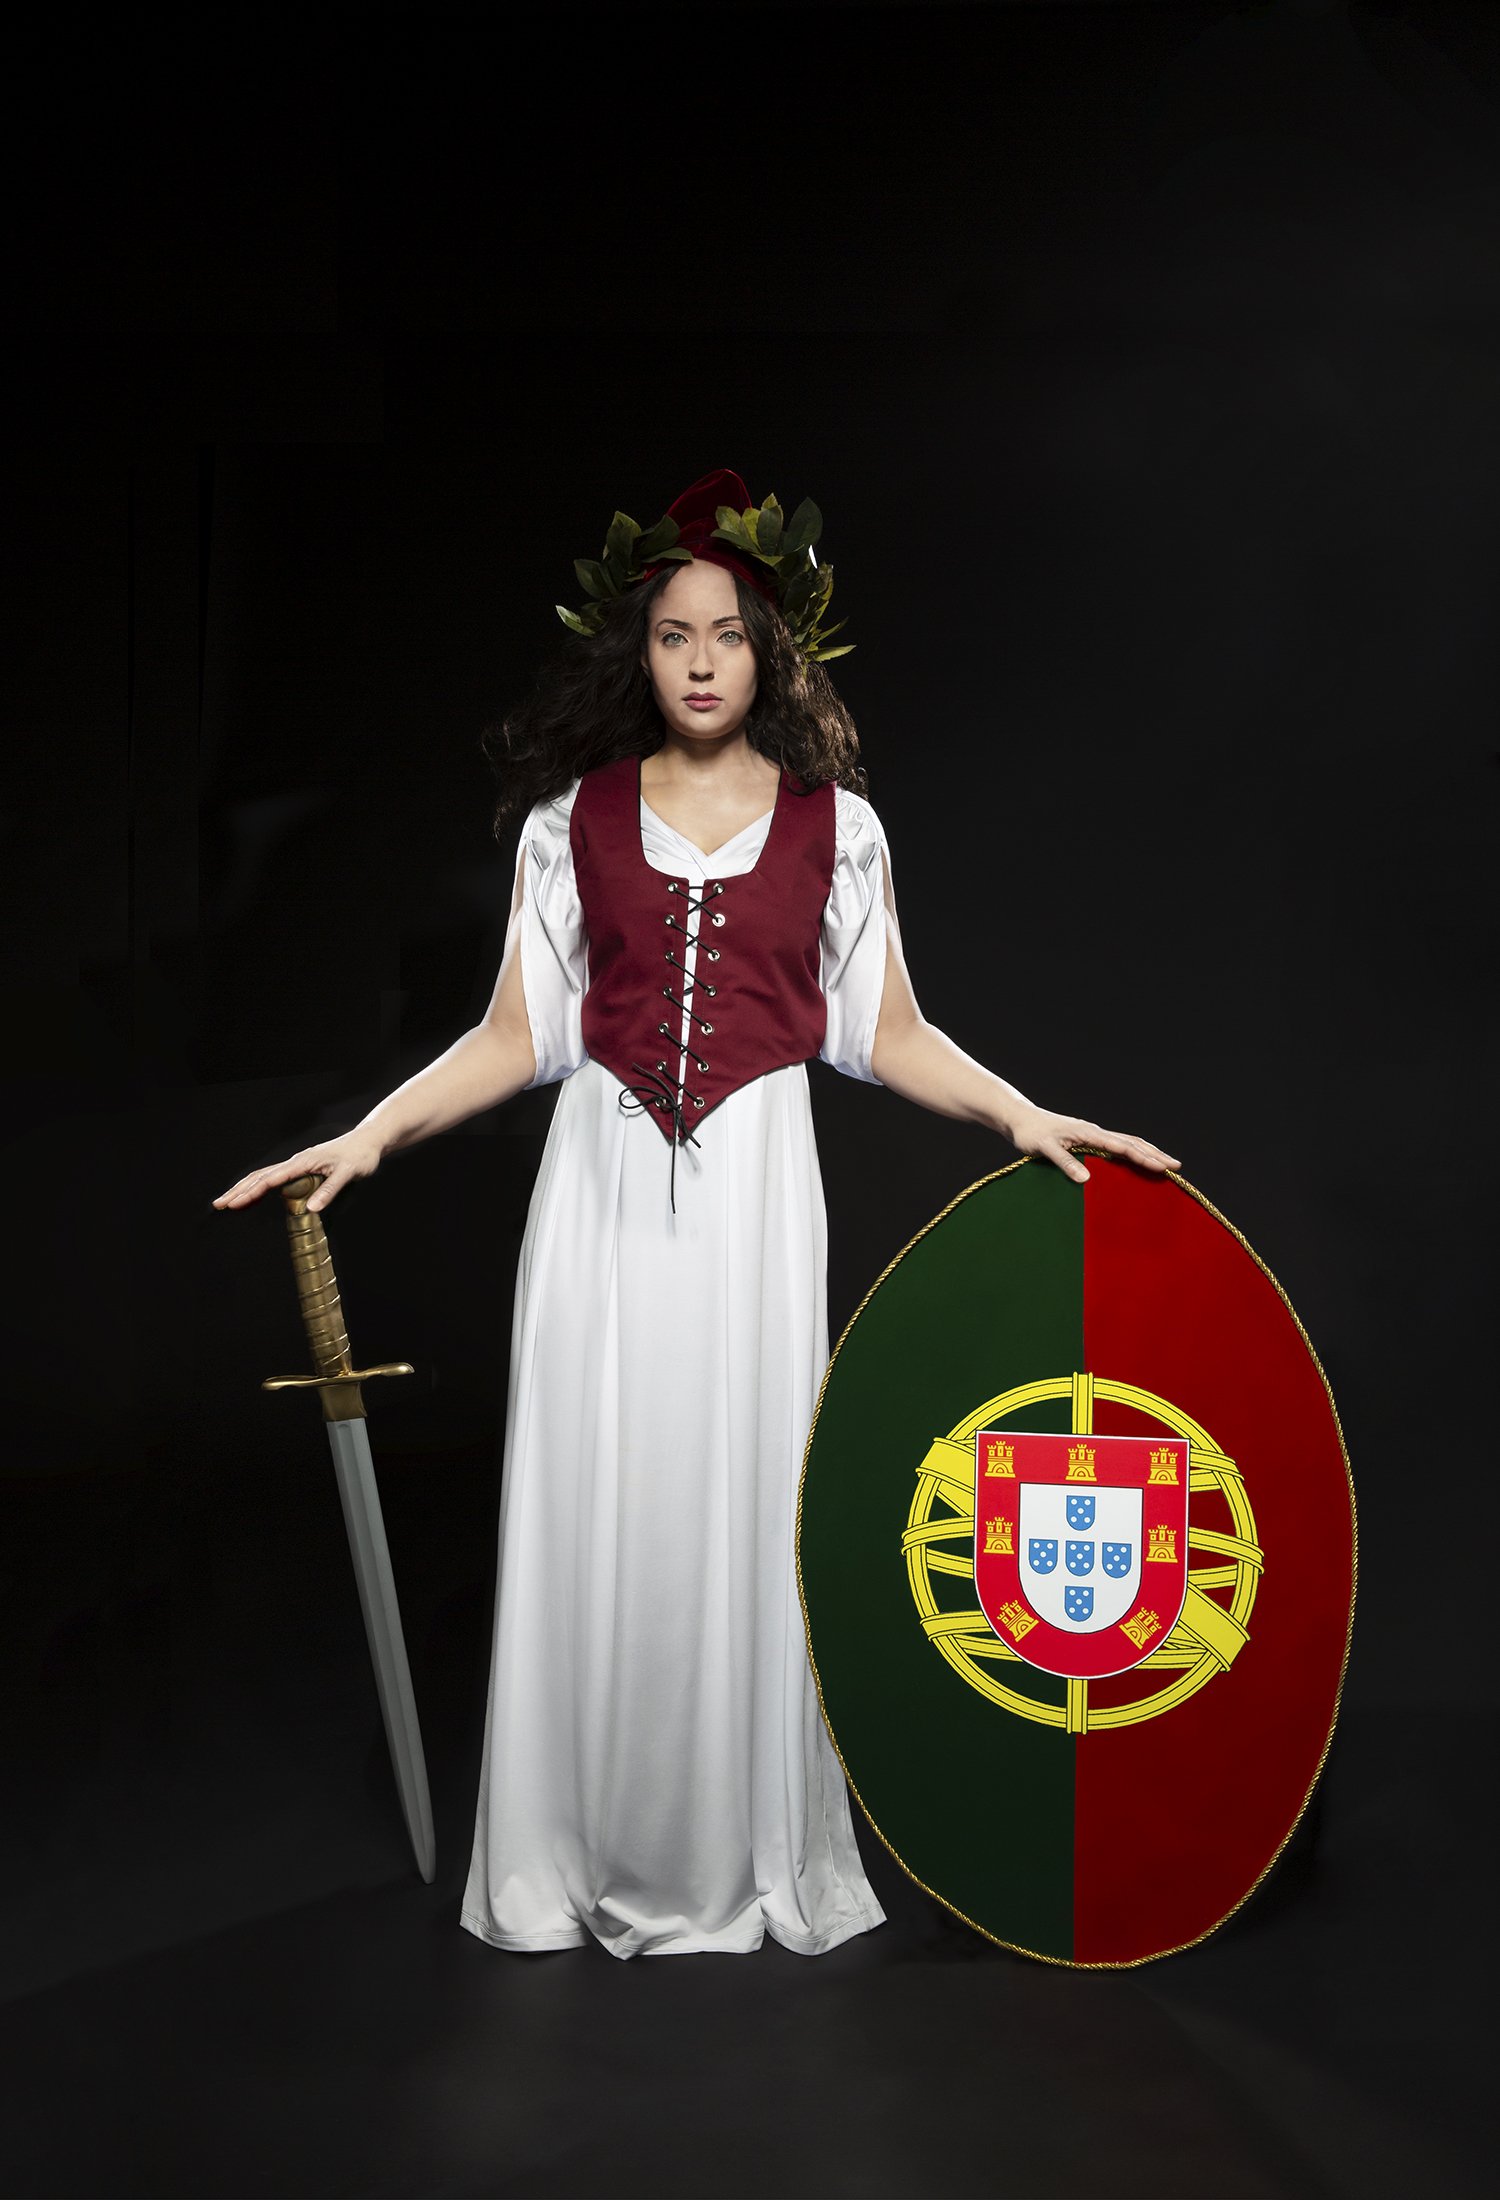 Efigie da Republica (Portugal), from the Pour La Victoire series, 